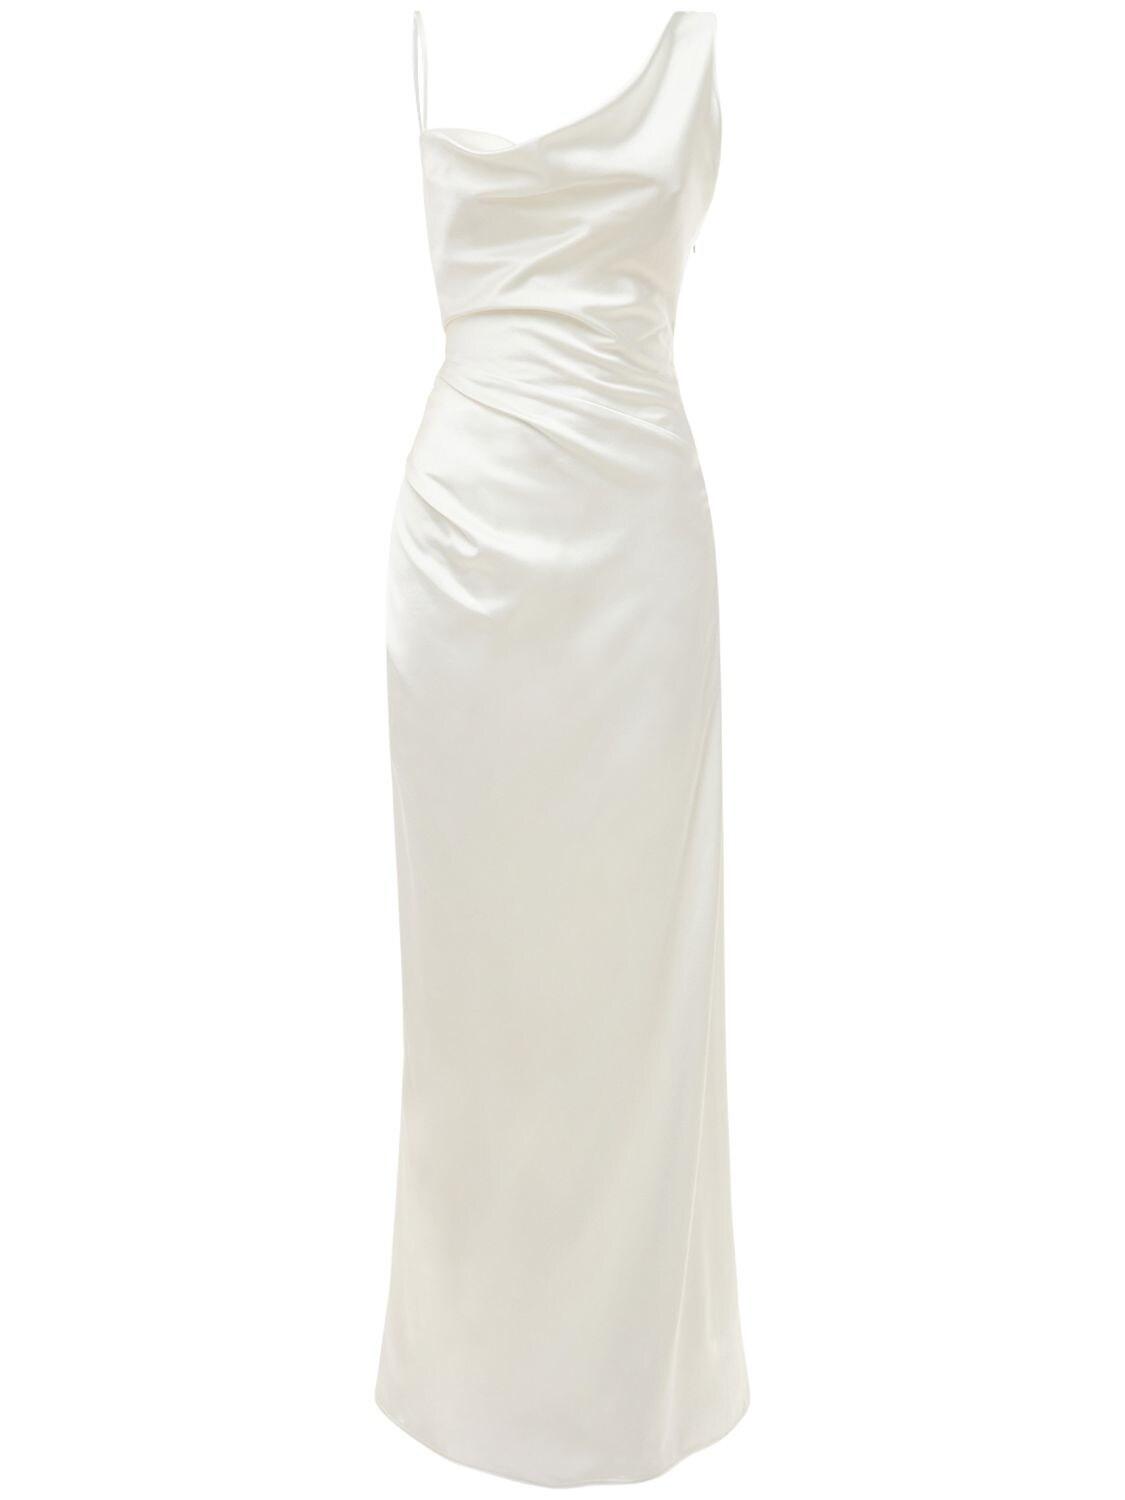 Vivienne Westwood Heavy Silk Satin Minerva Dress in White | Lyst UK